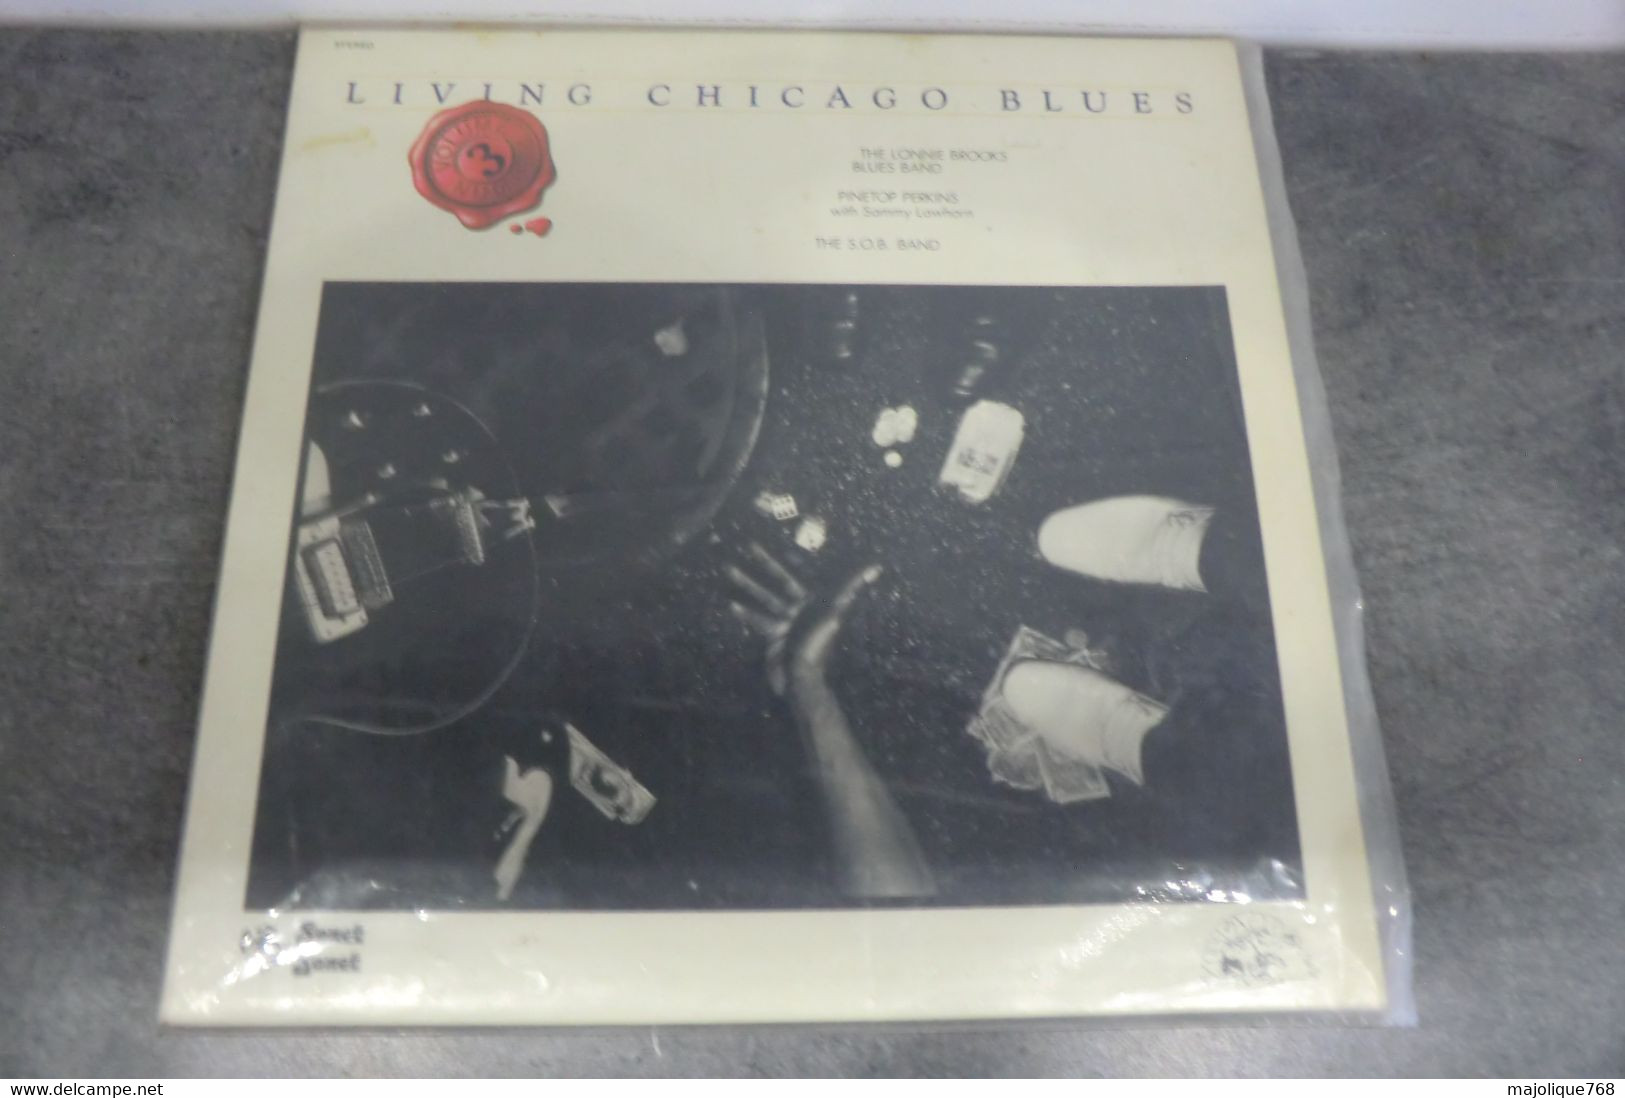 Disque De Living Chicago Blue Volume Number 3 - Sonet  ST 8545 6 France 1978 - Blues